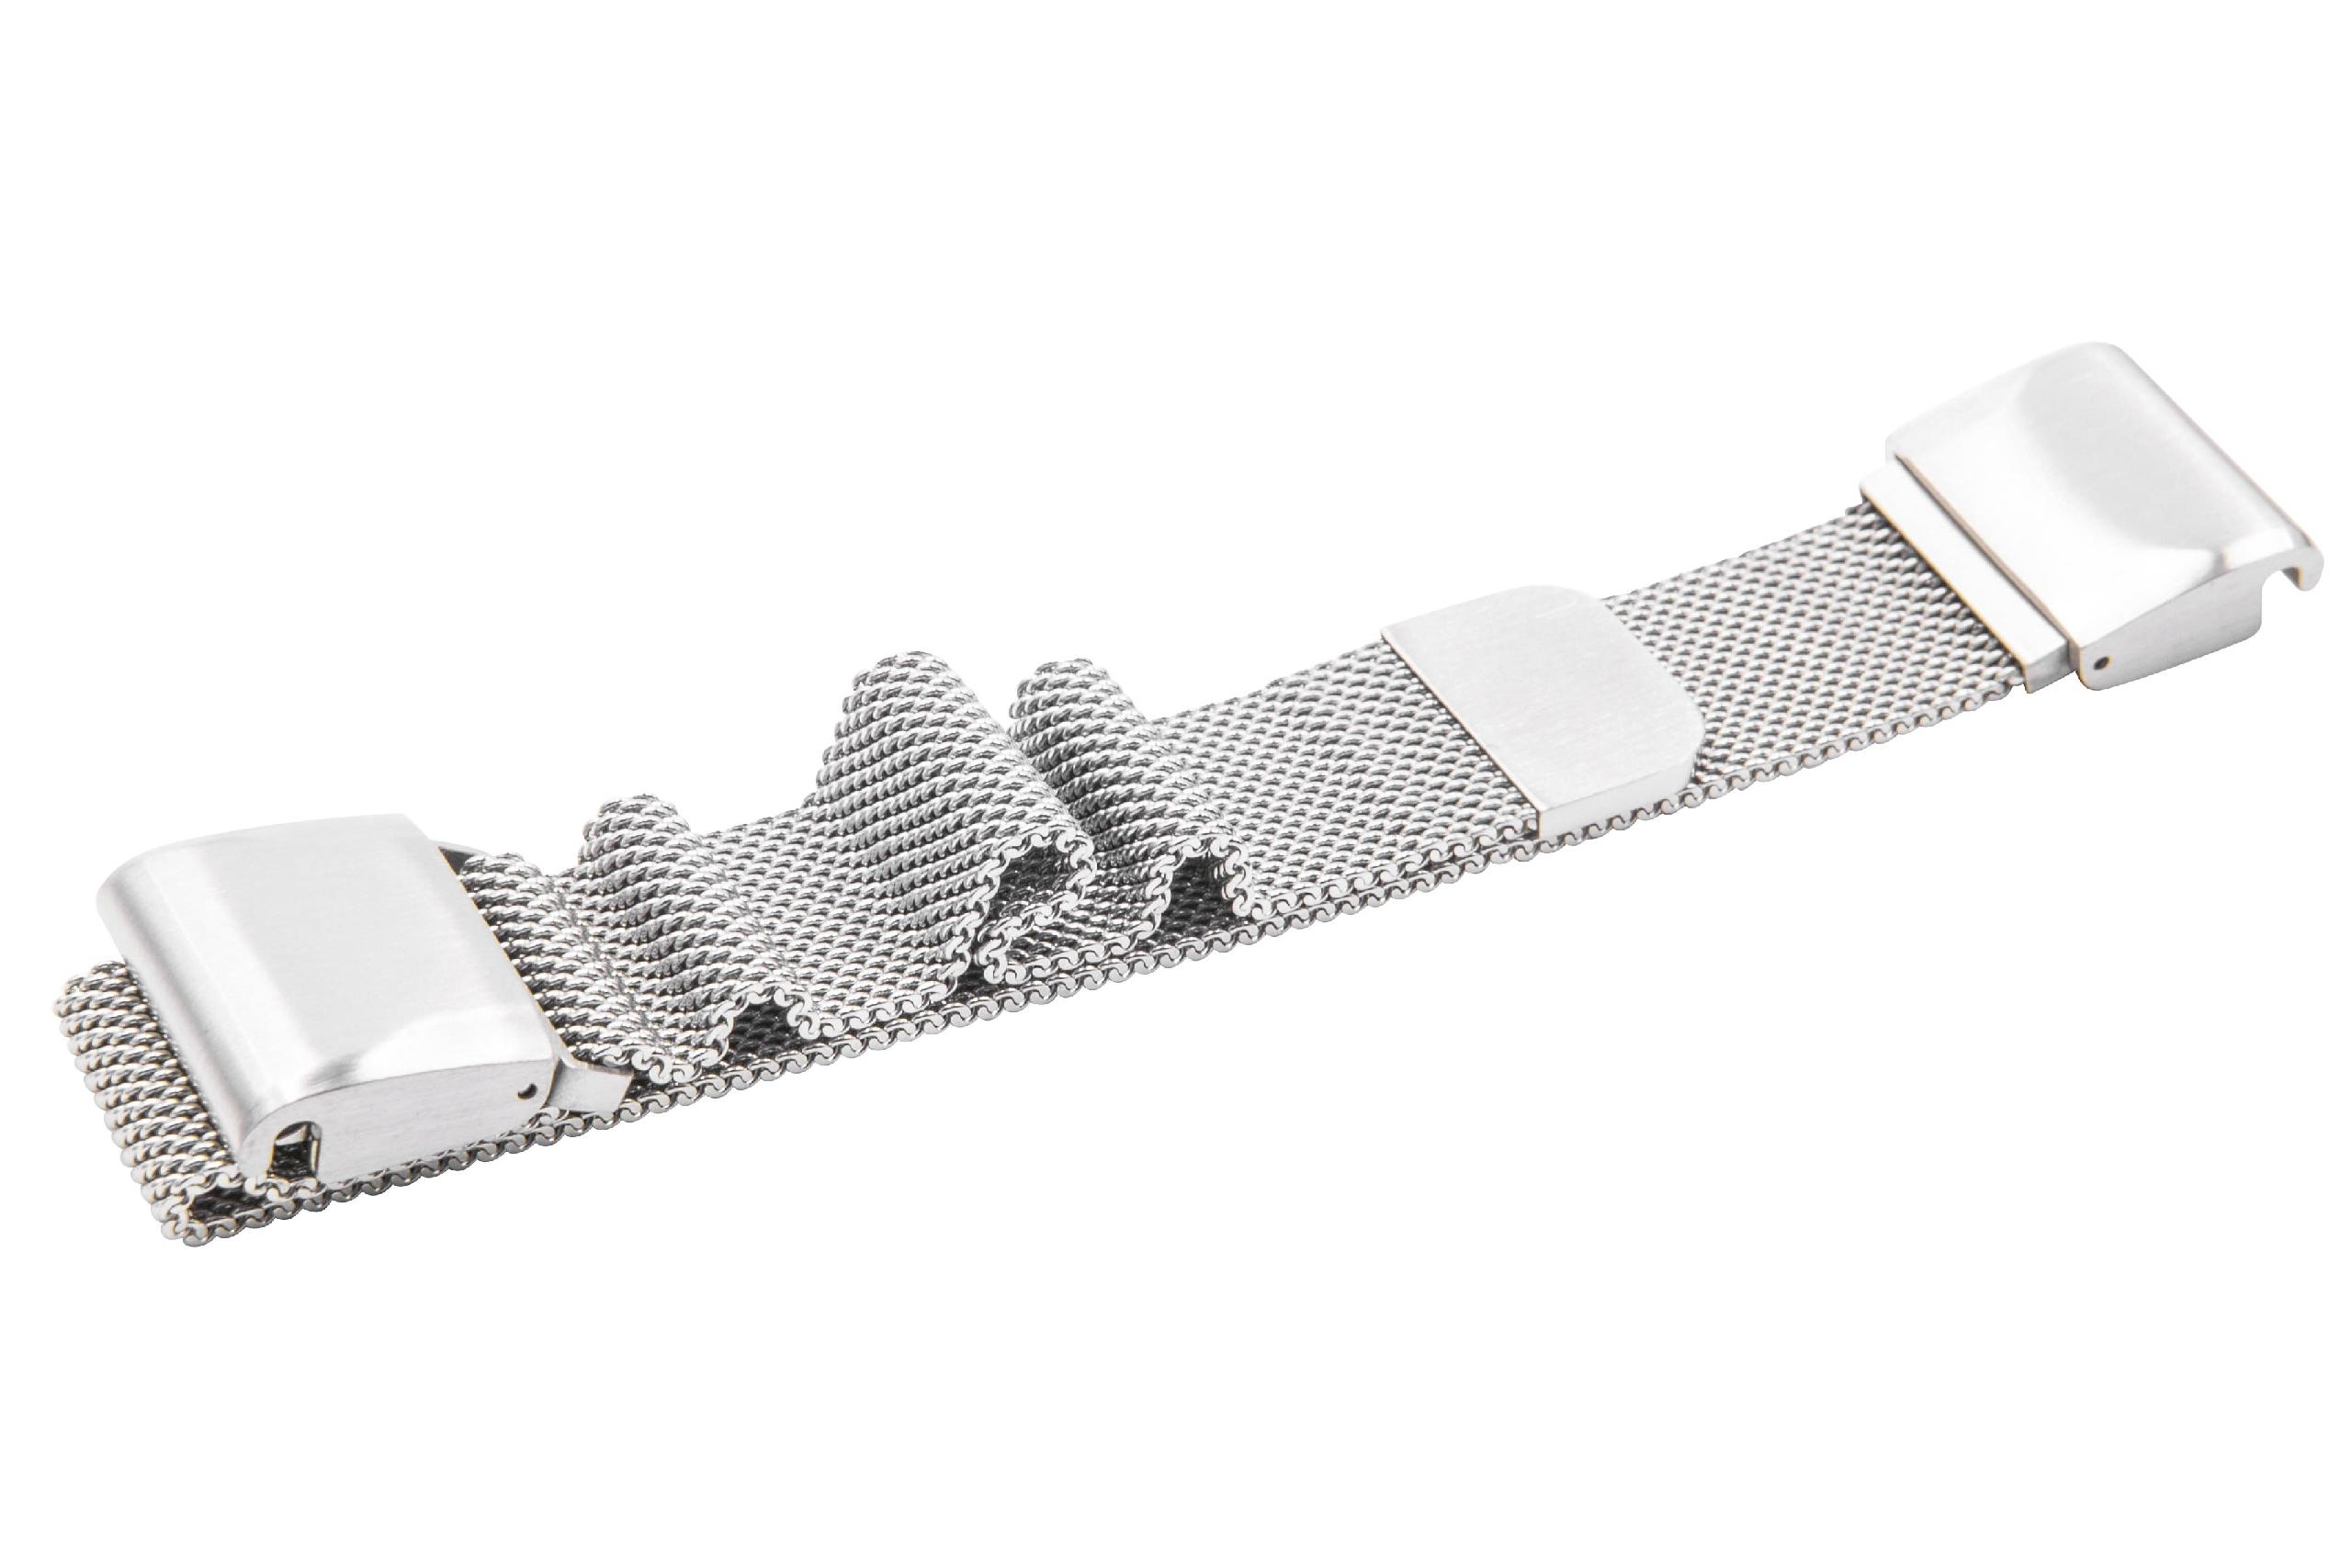 cinturino per Garmin Fenix Smartwatch - fino a 248 mm circonferenza del polso, acciaio inox, argento